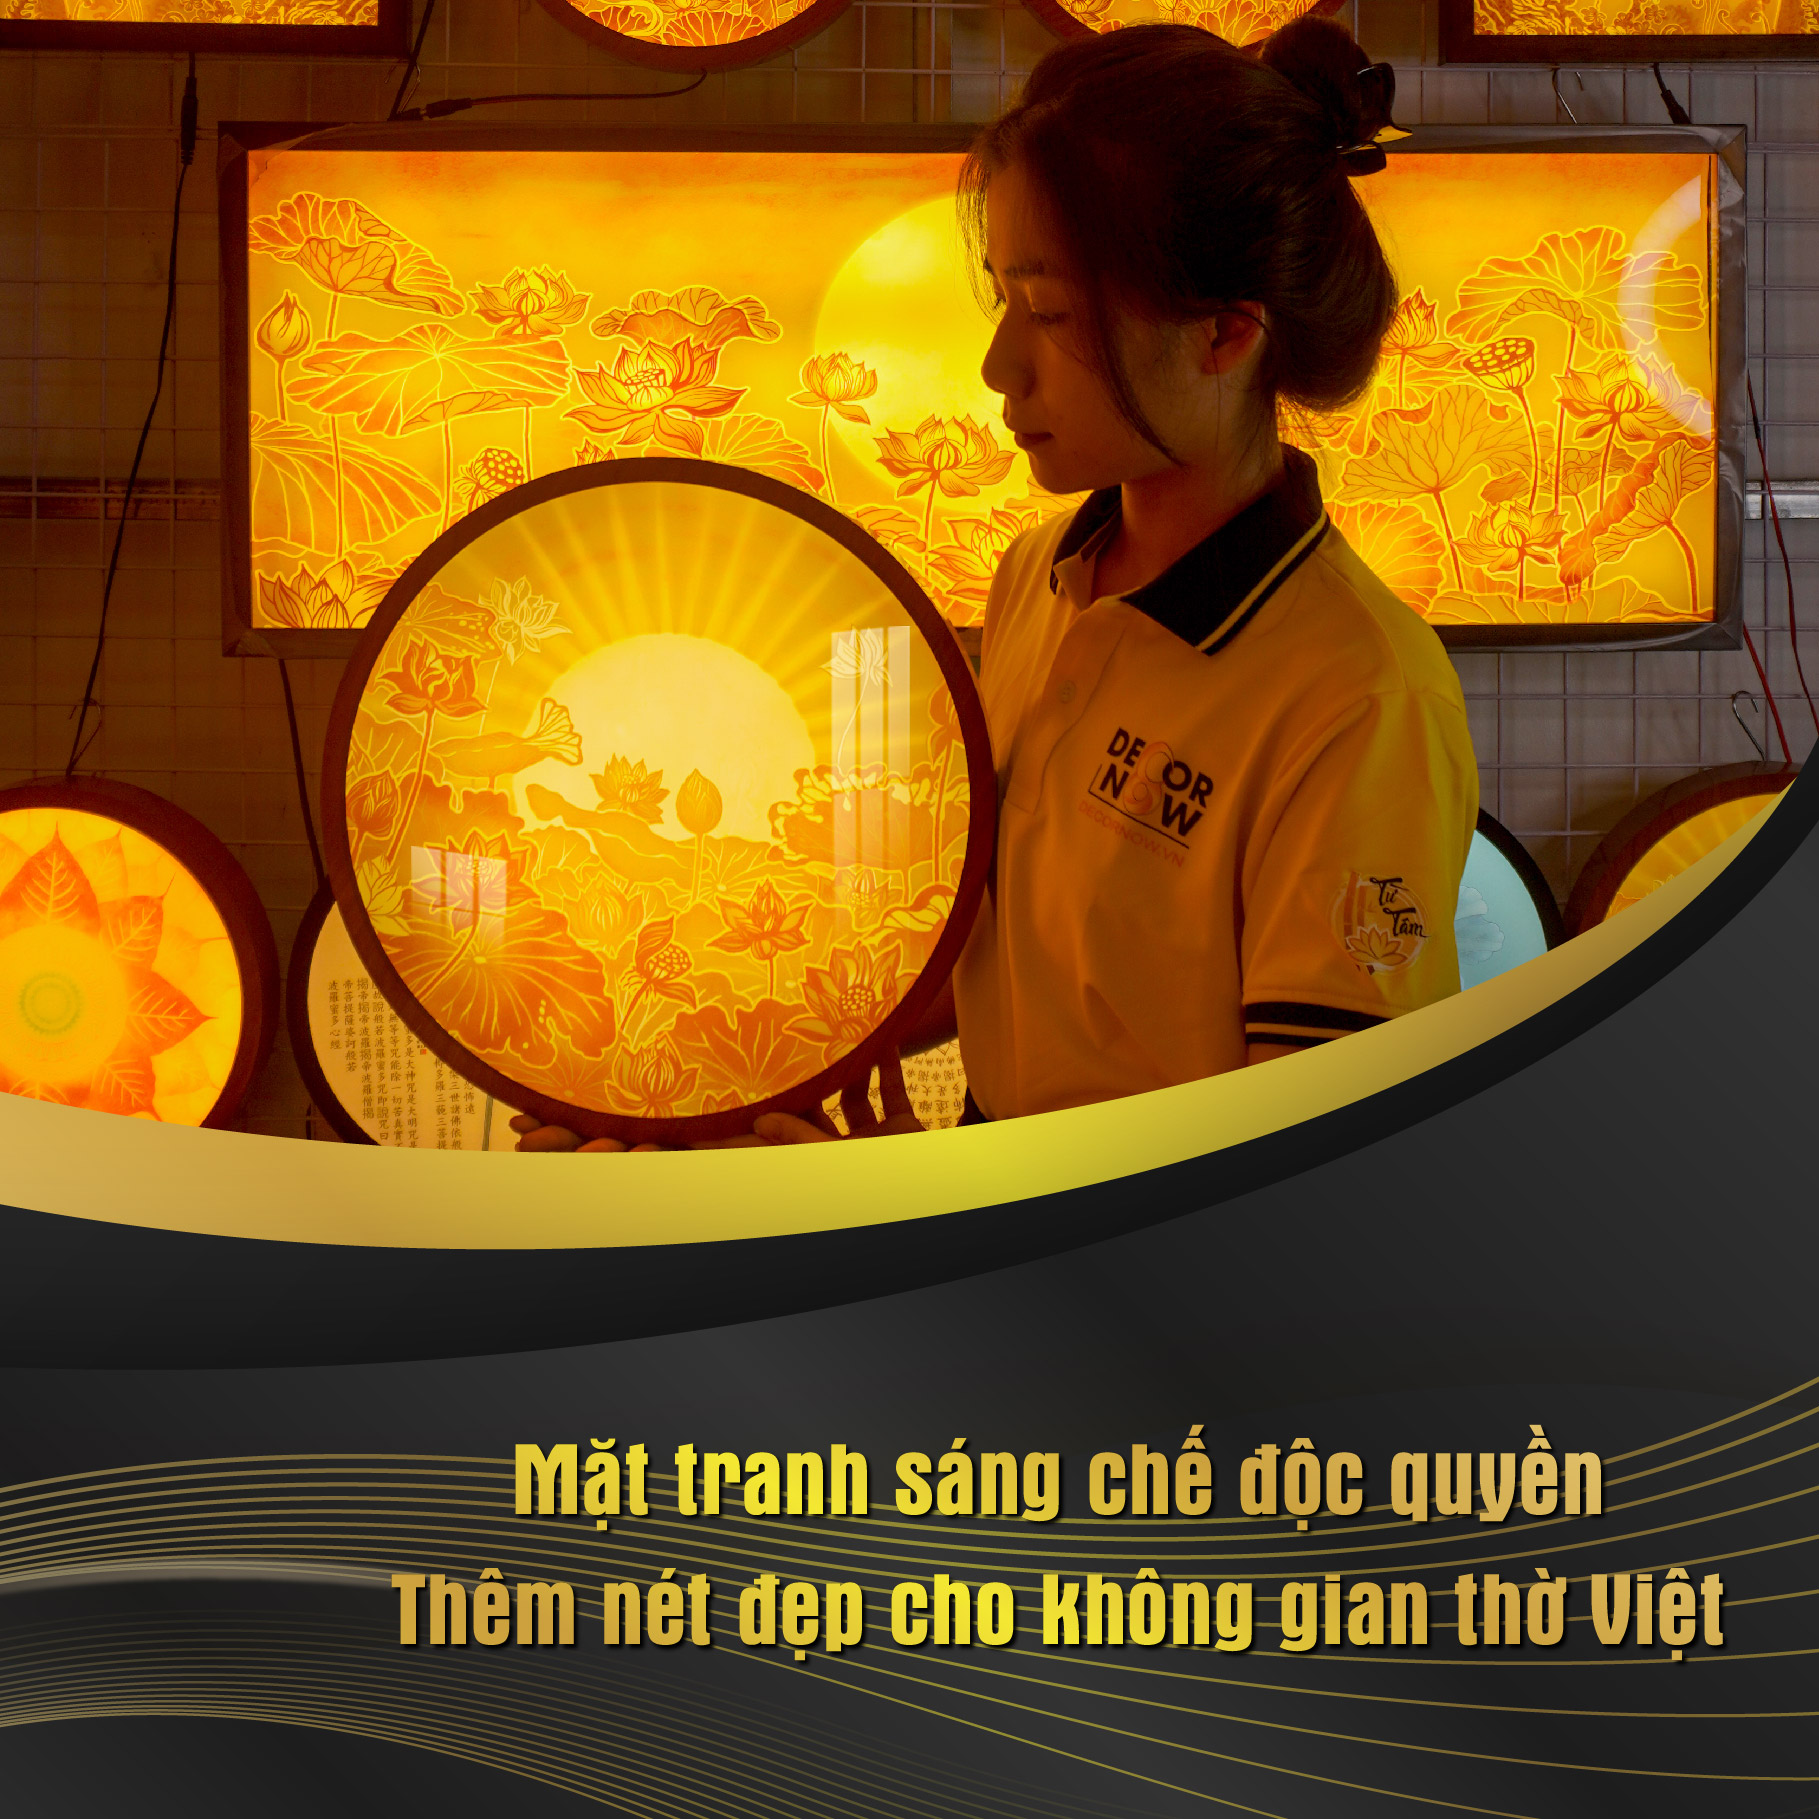 Đèn Hào Quang Phật In Tranh Trúc Chỉ DECORNOW 30,40 cm, Trang Trí Ban Thờ, Hào Quang Trúc Chỉ MANDALA DCN-TC33